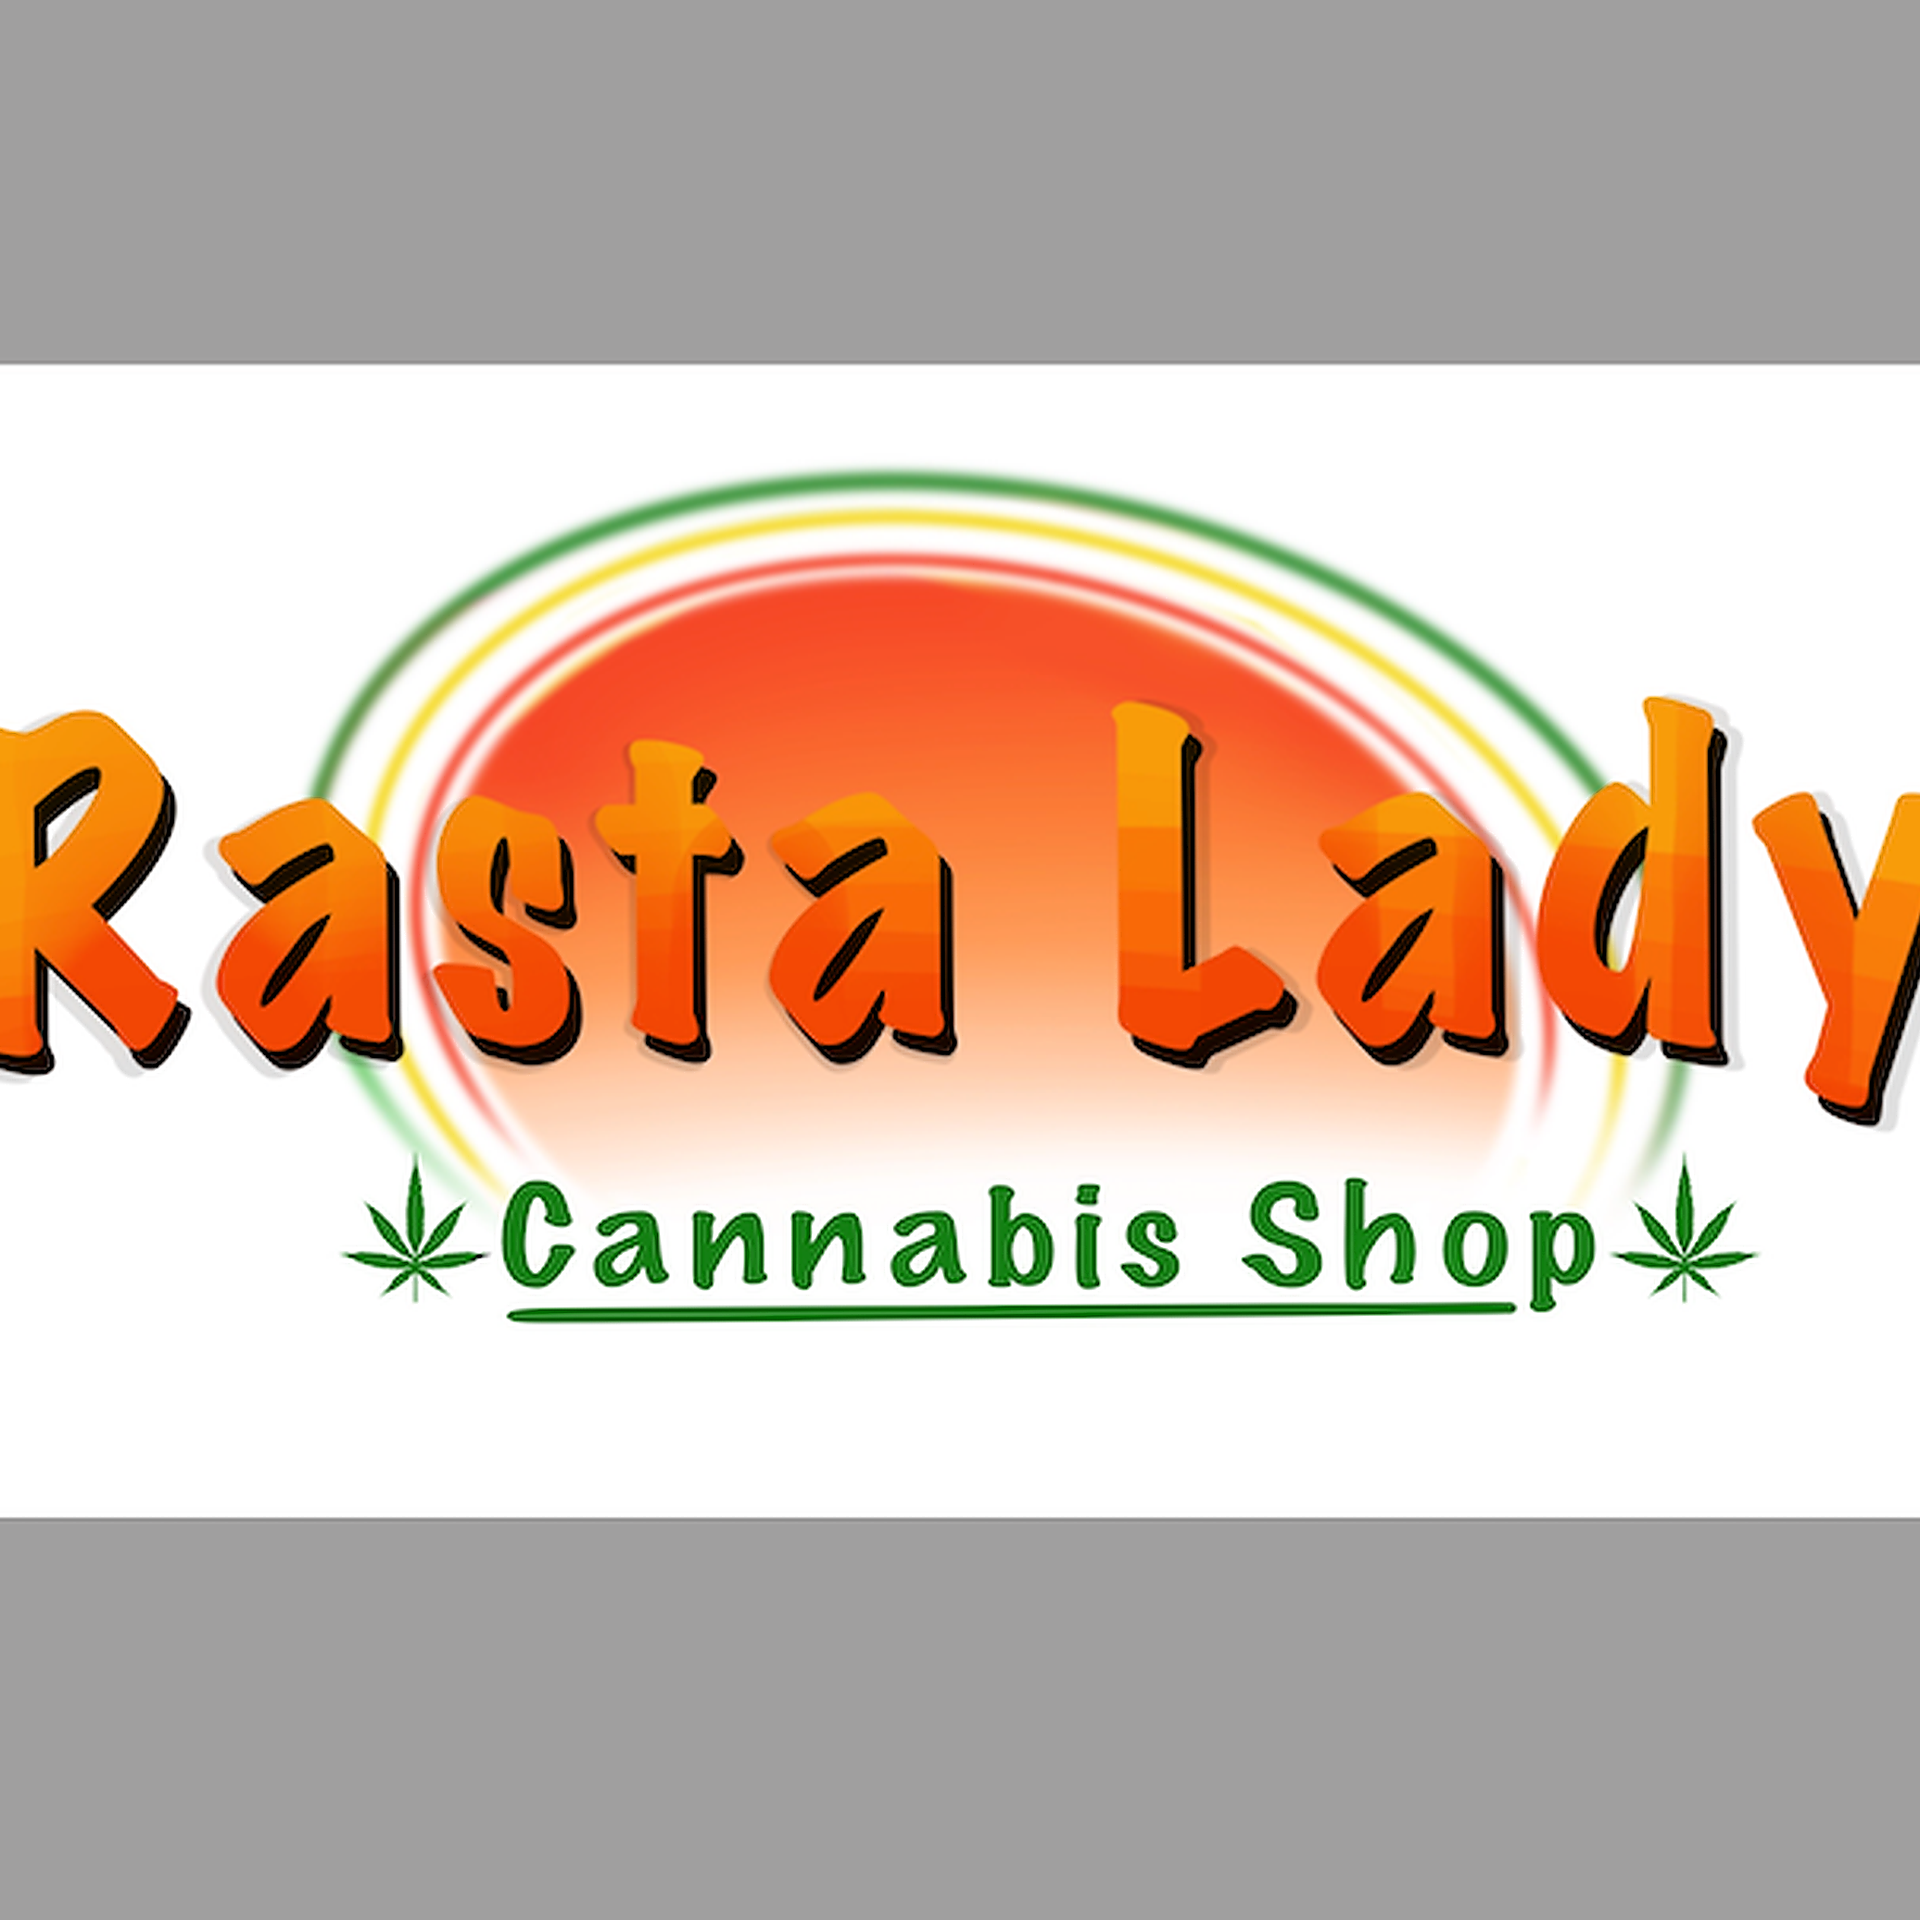 Cannabis Store Rasta Lady Cannabis Shop - 1